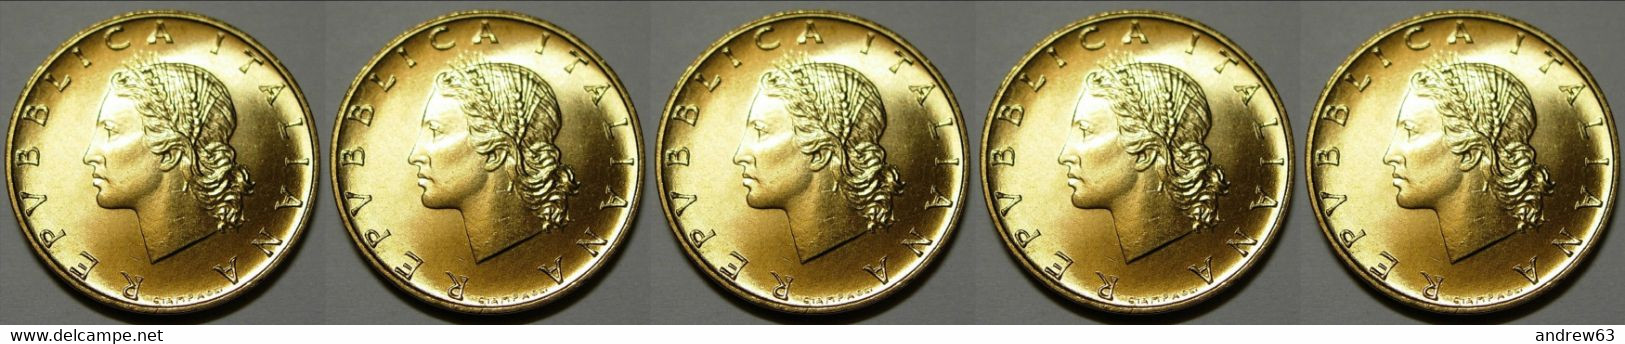 ITALIA - Lire 20 1995 - FDC/Unc Da Rotolino/from Roll 5 Monete/5 Coins - 20 Lire